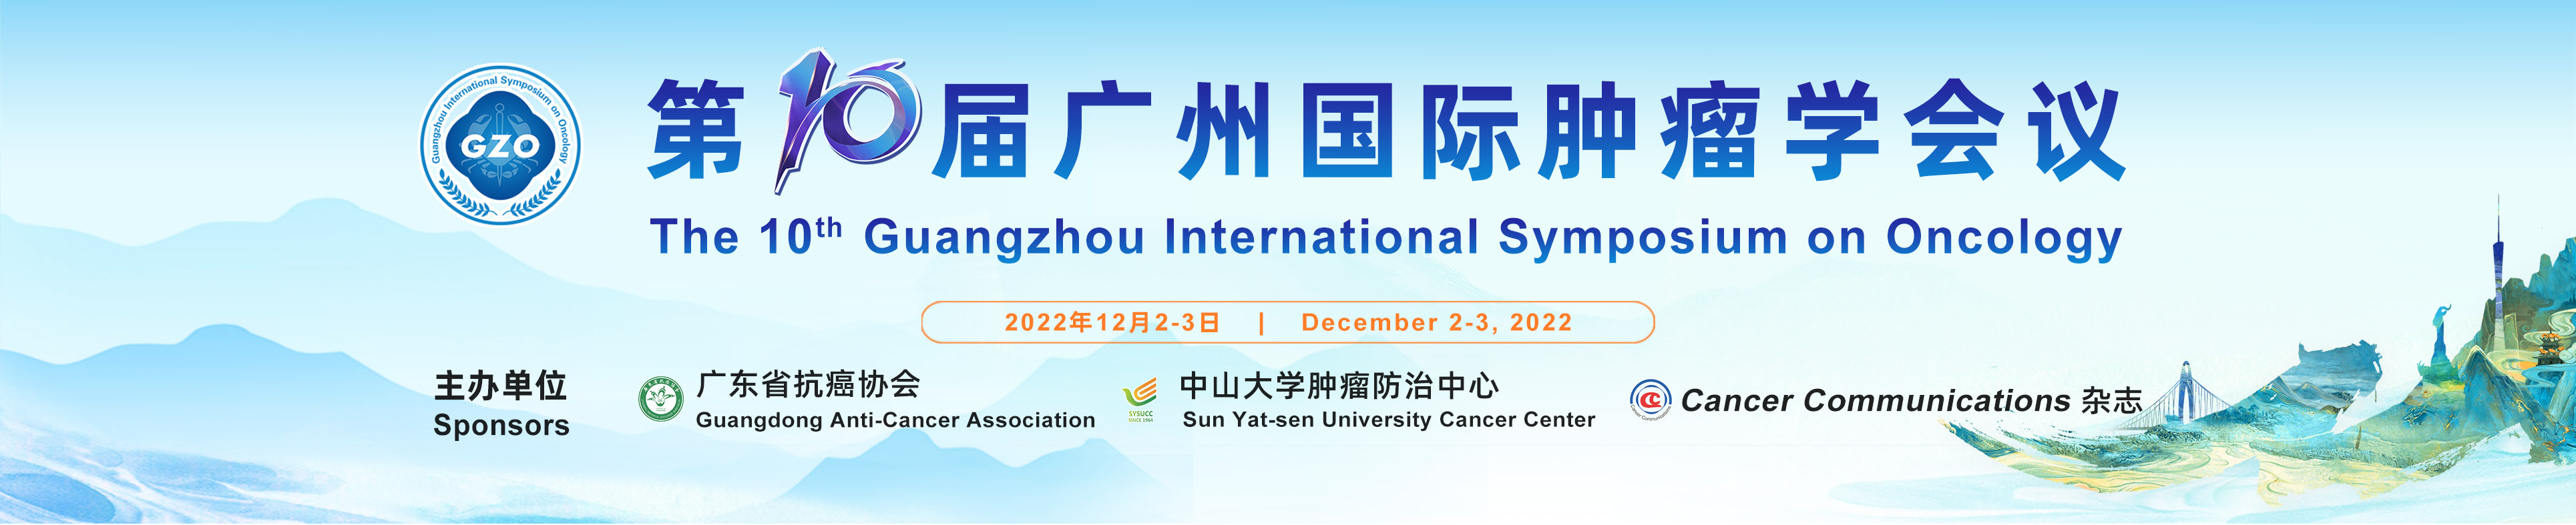 第10届广州国际肿瘤学会议